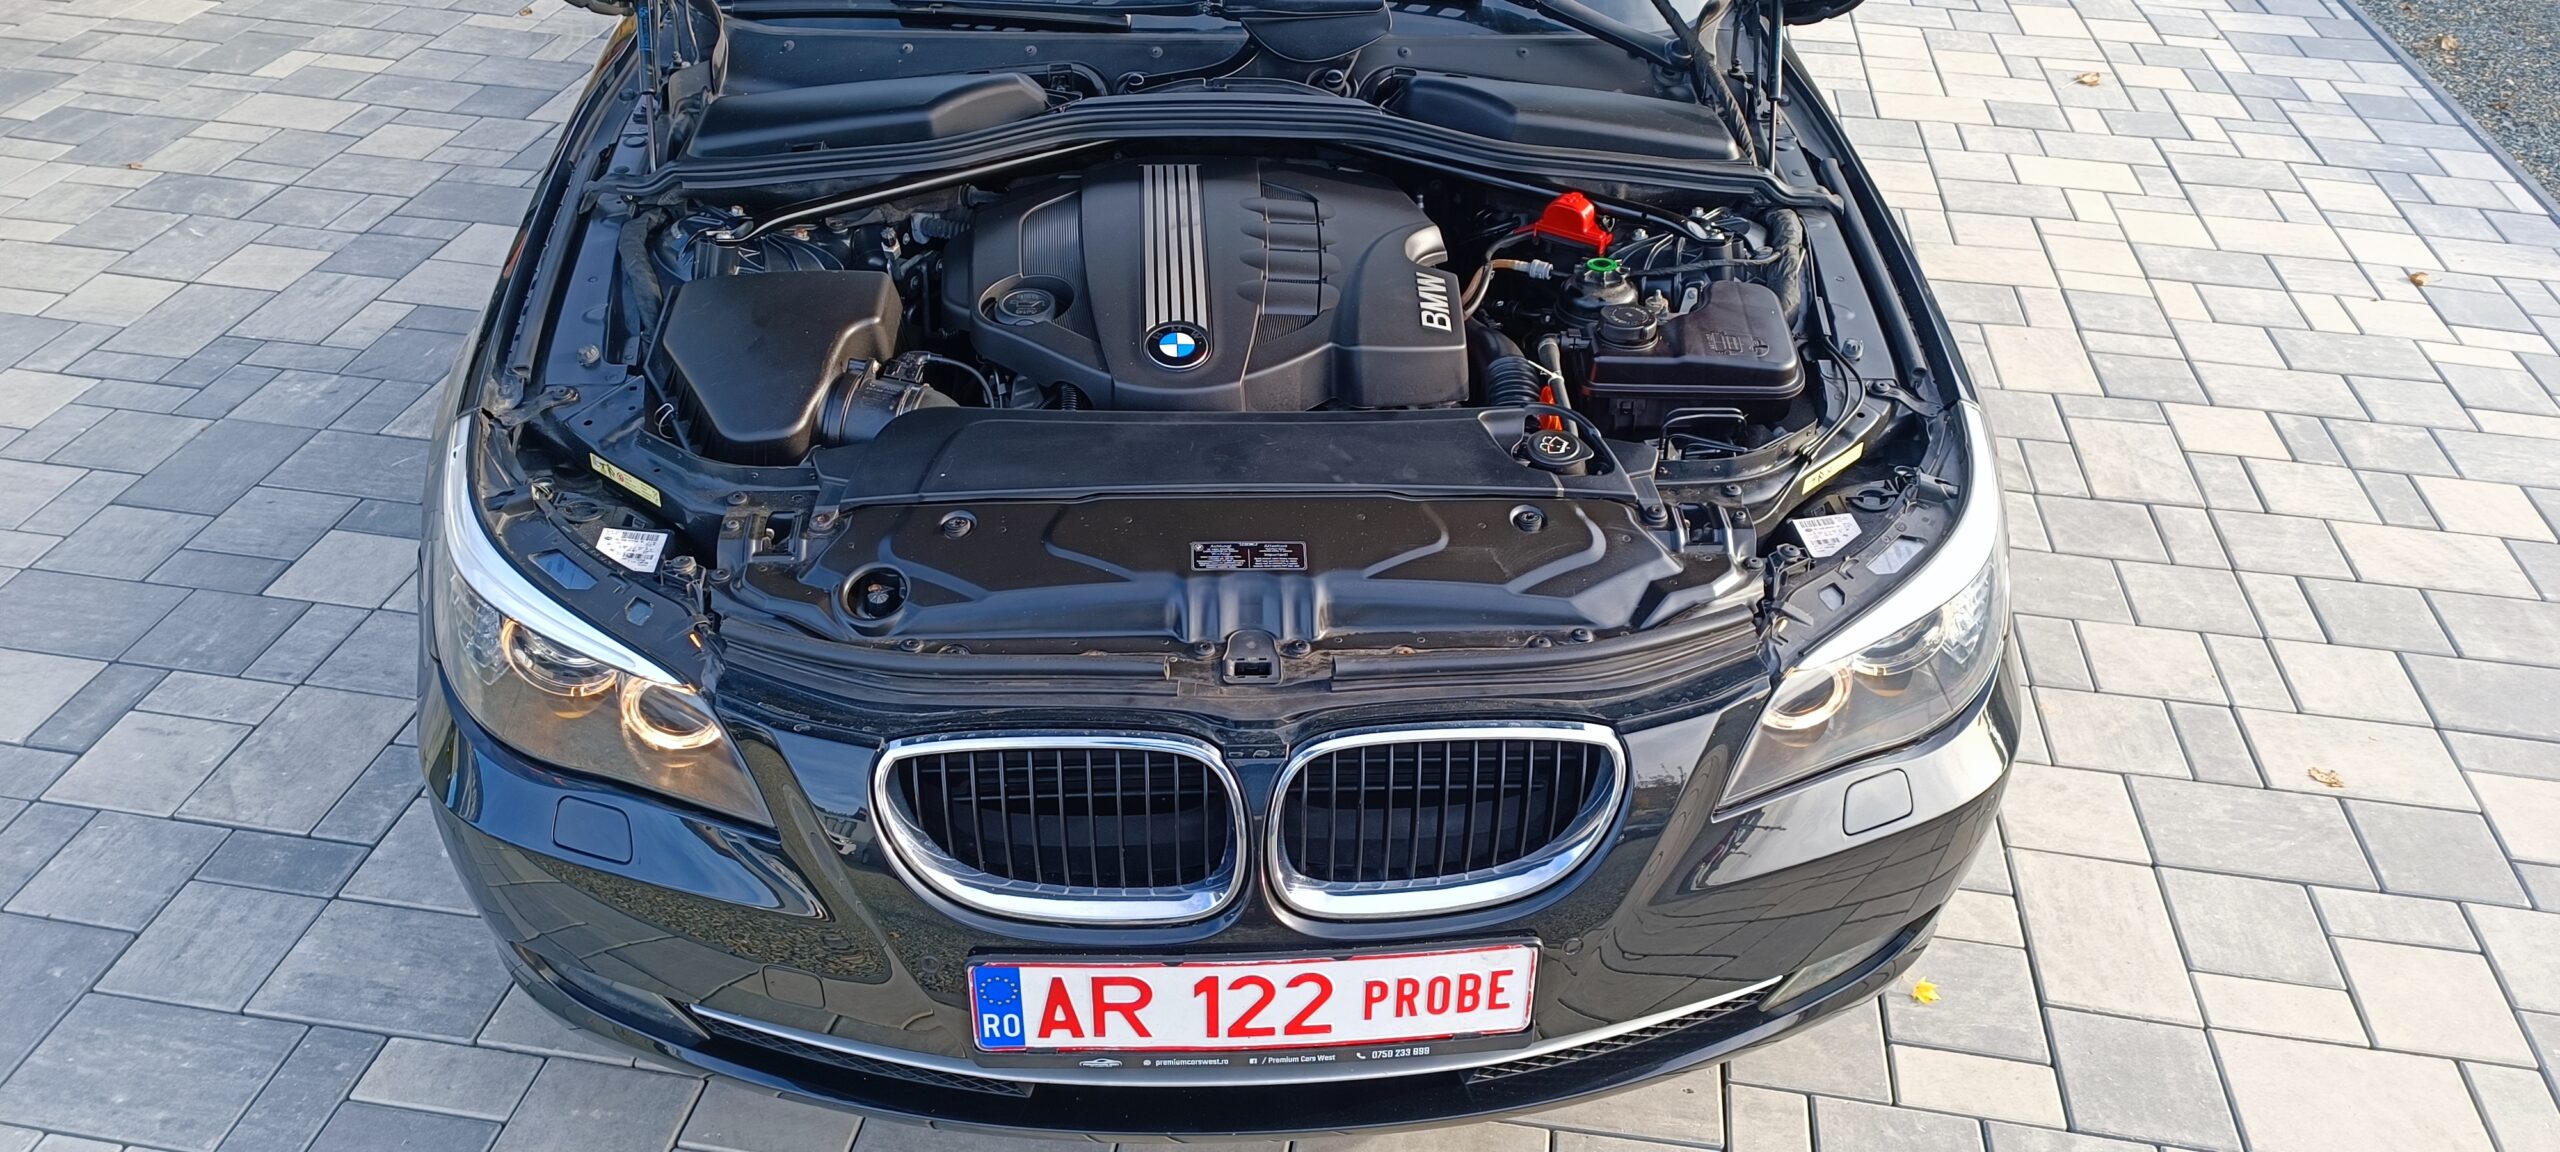 BMW 520 D, 2.0 DIESEL, 177 CP, EURO 5